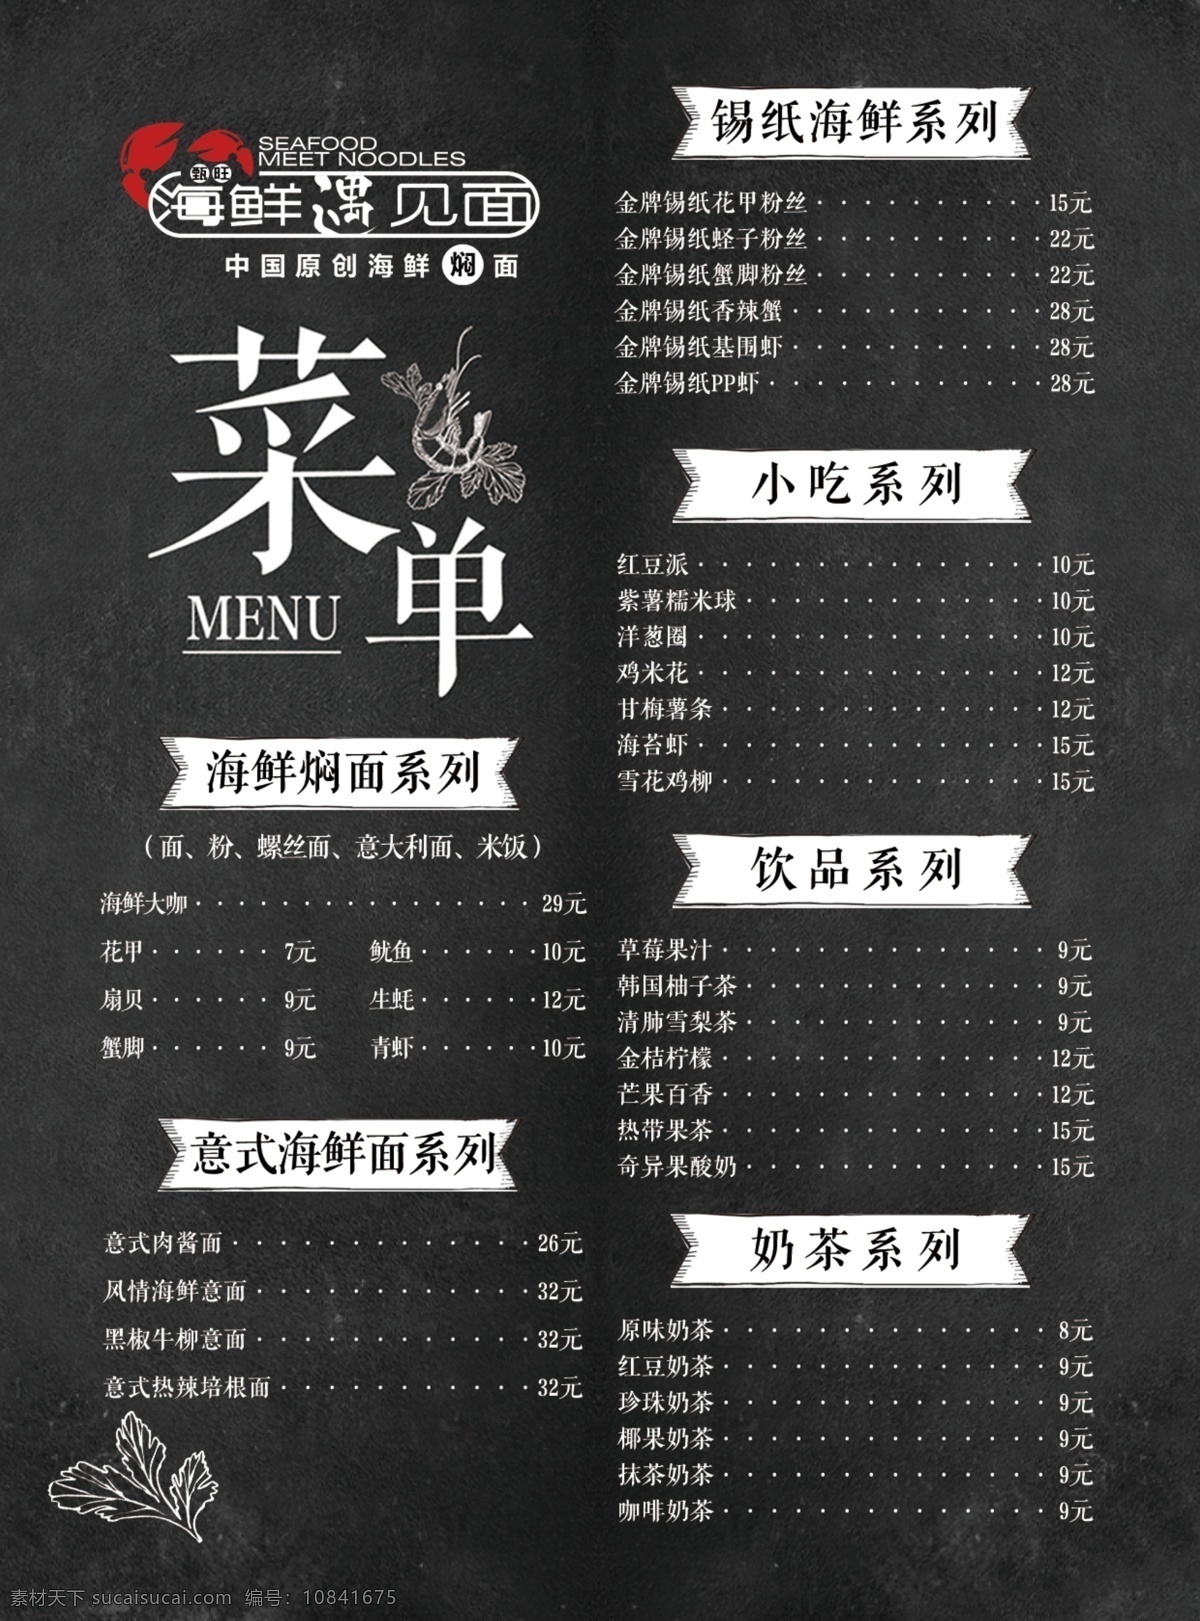 海鲜店菜单 菜单 促销菜单 海鲜菜单 黑白菜单 饭店菜单 dm单画册